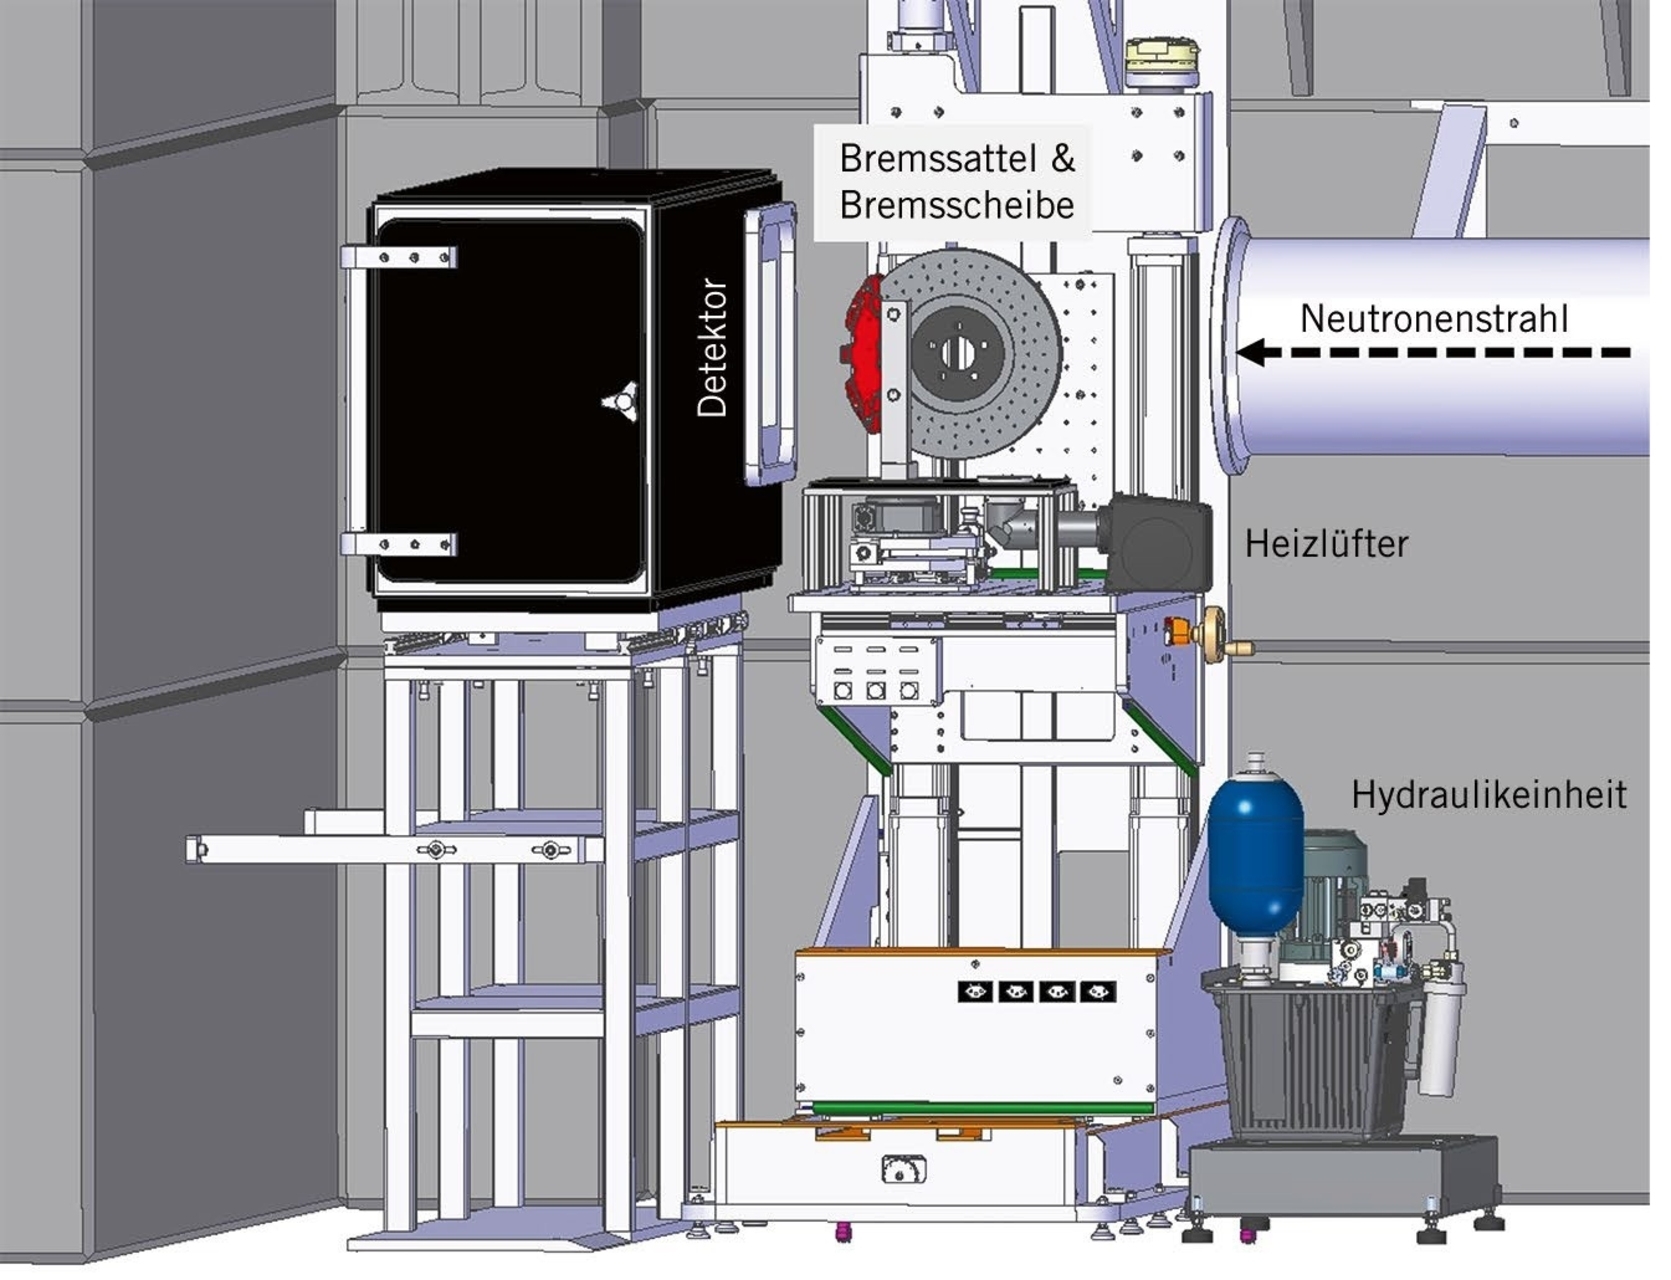 Φρένα: οι αναλύσεις των συστημάτων πέδησης πραγματοποιήθηκαν στην "Πηγή νετρονίων Swiss Spallation" (SINQ) σε δοκιμαστικό εξοπλισμό ειδικά κατασκευασμένο για τα πειράματα. μεταξύ άλλων, προσομοιώθηκαν διαφορετικά σενάρια λειτουργίας, αυξάνοντας σταδιακά τη θερμοκρασία με αερόθερμο